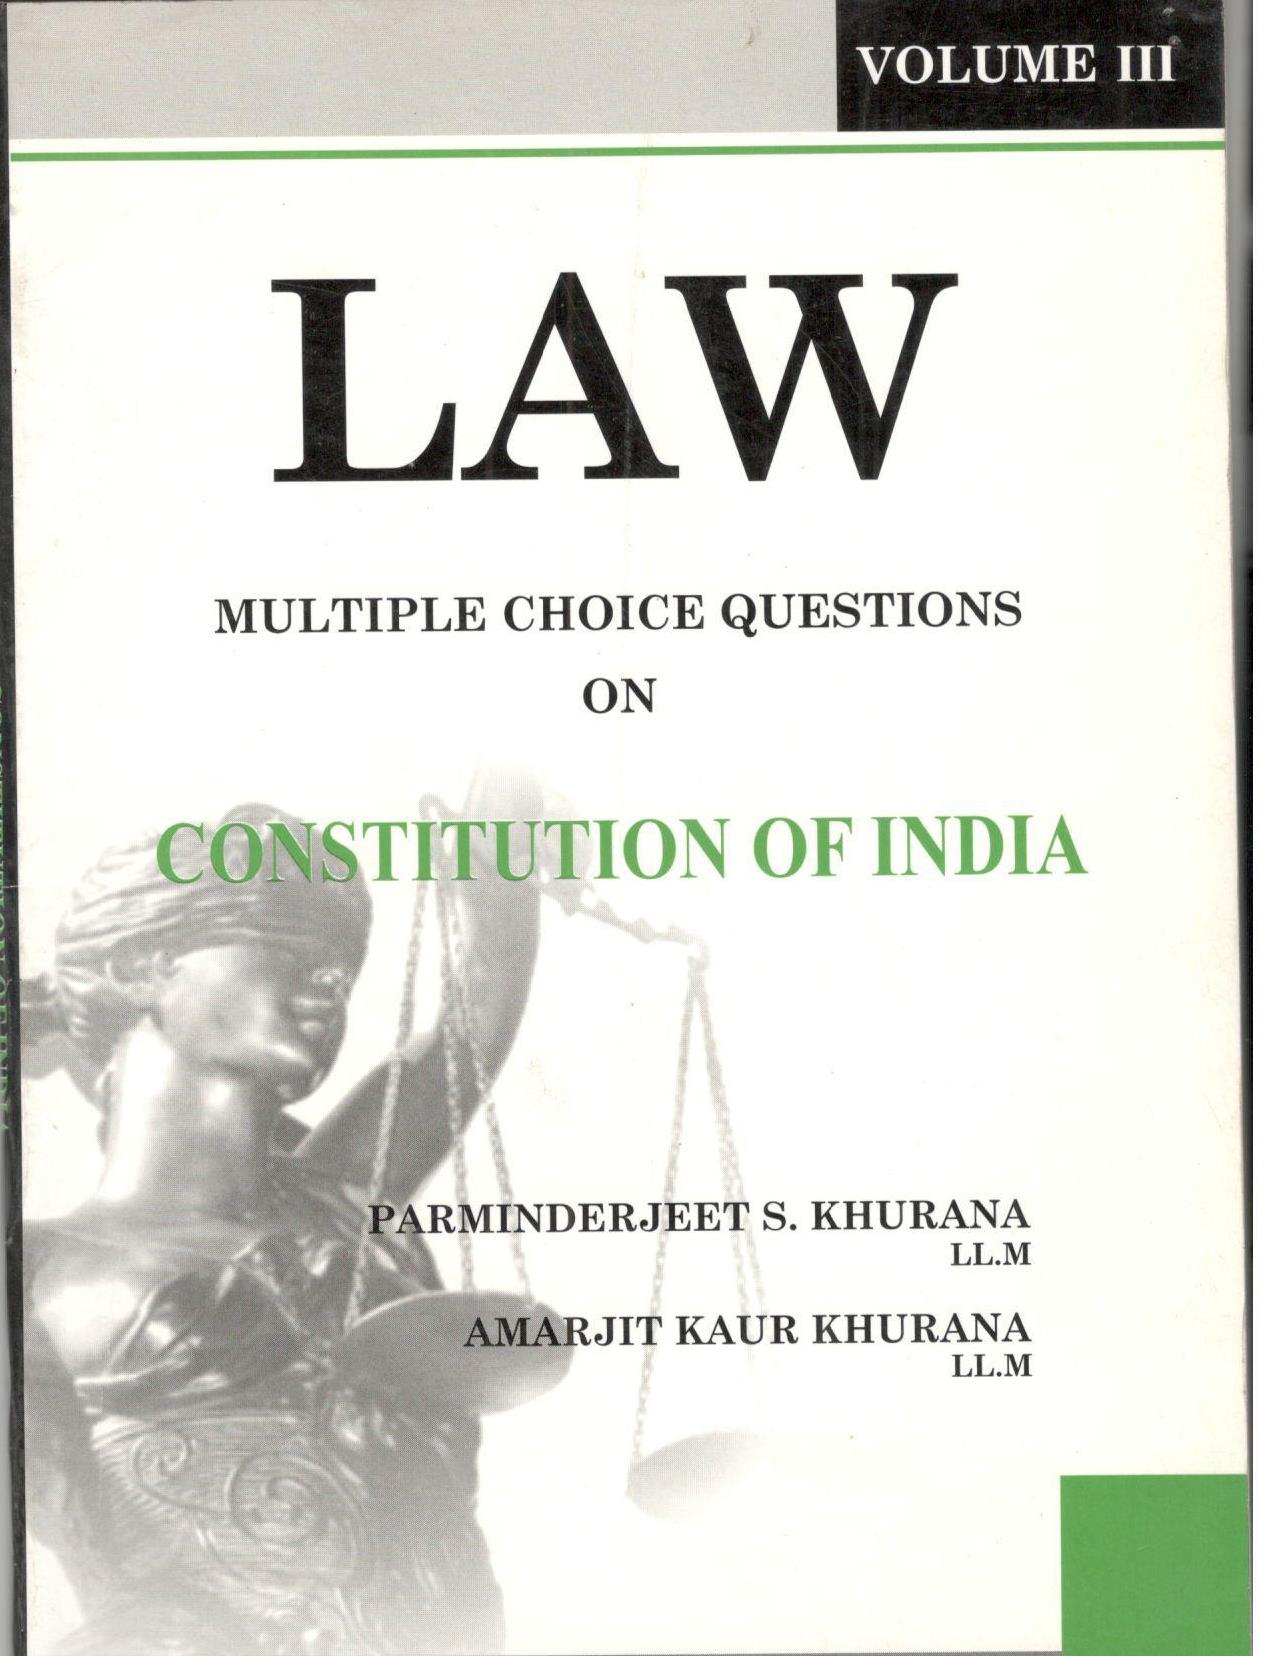 2003 Constitution of India Vol. III